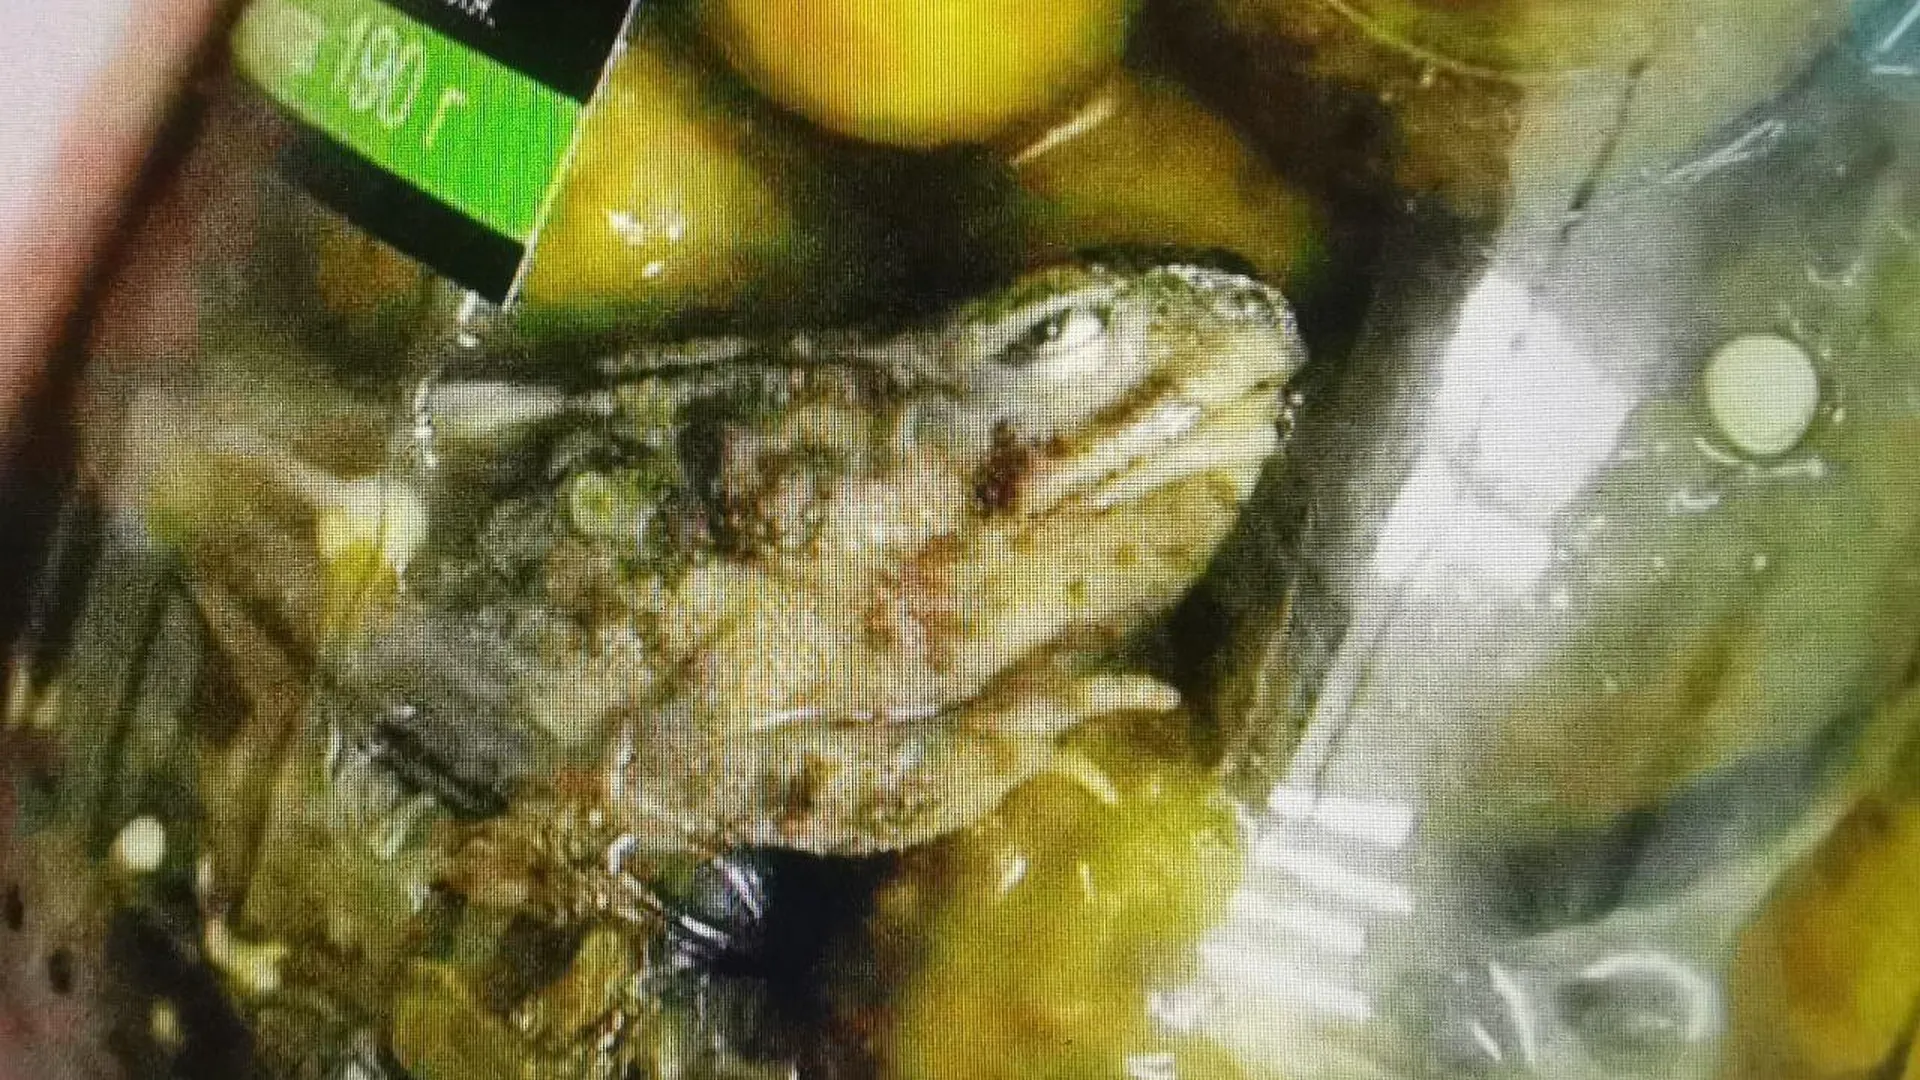 В Югре продали банку огурцов с мертвой маринованной лягушкой внутри